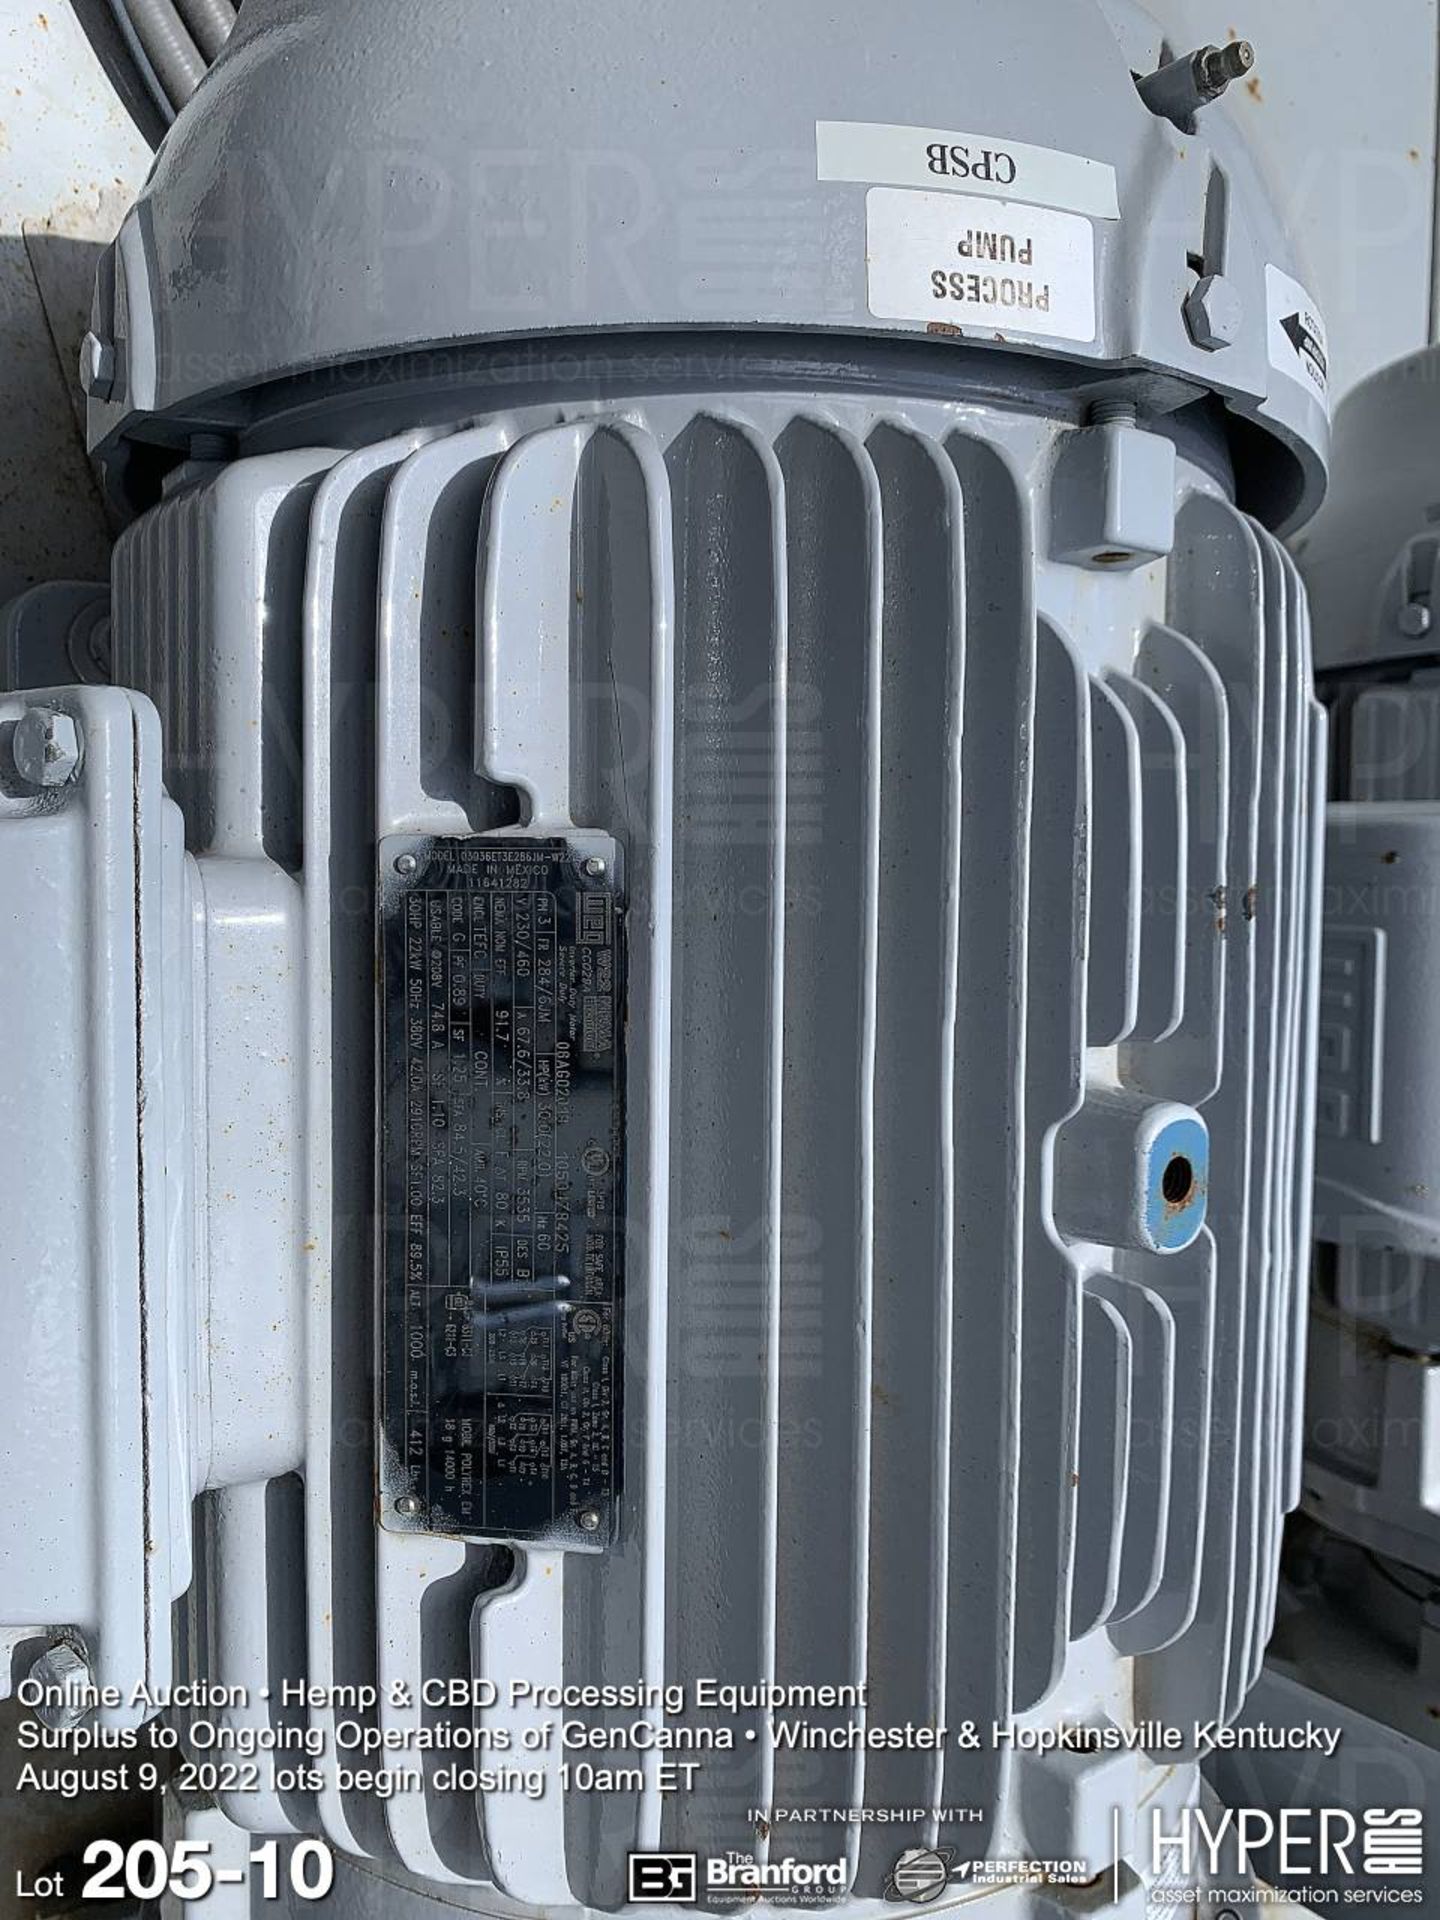 THAR Isolator SFC 60 CO2 Purification System (Supercritical Fluid Chromatography) - Unused - Image 10 of 12